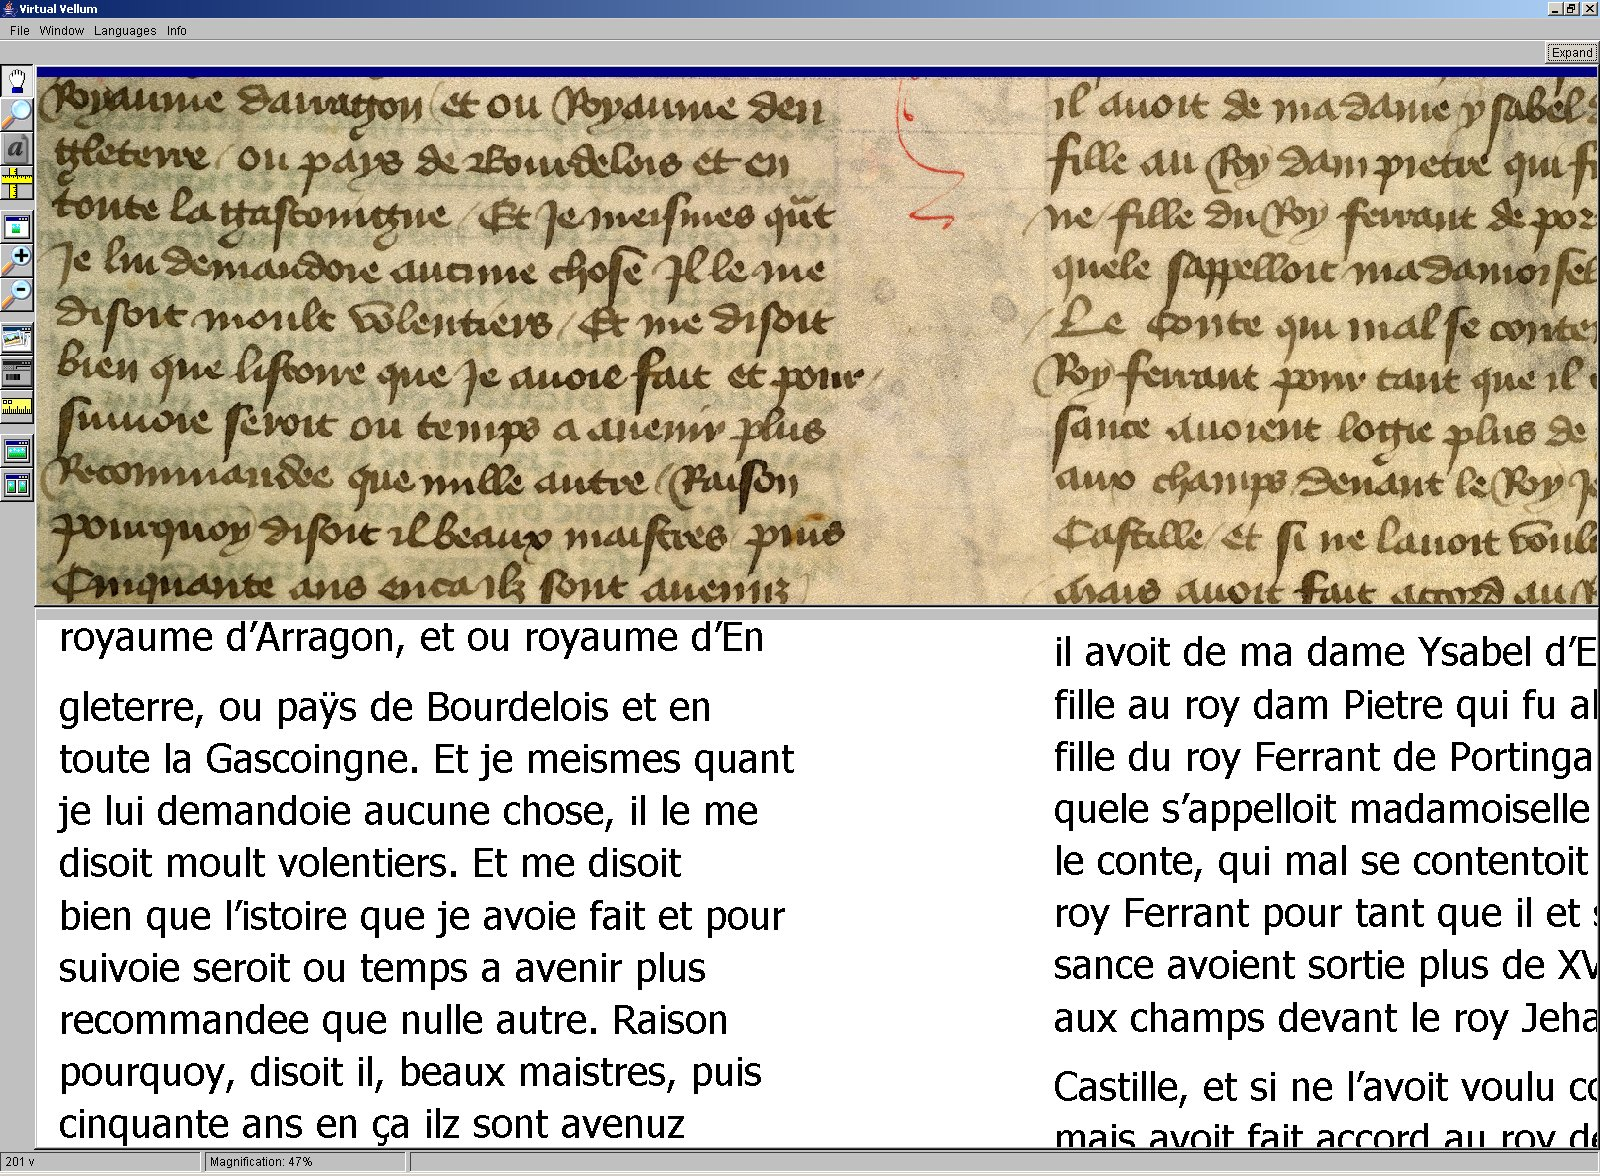 Second screenshoot of original and transcribed manuscripts.